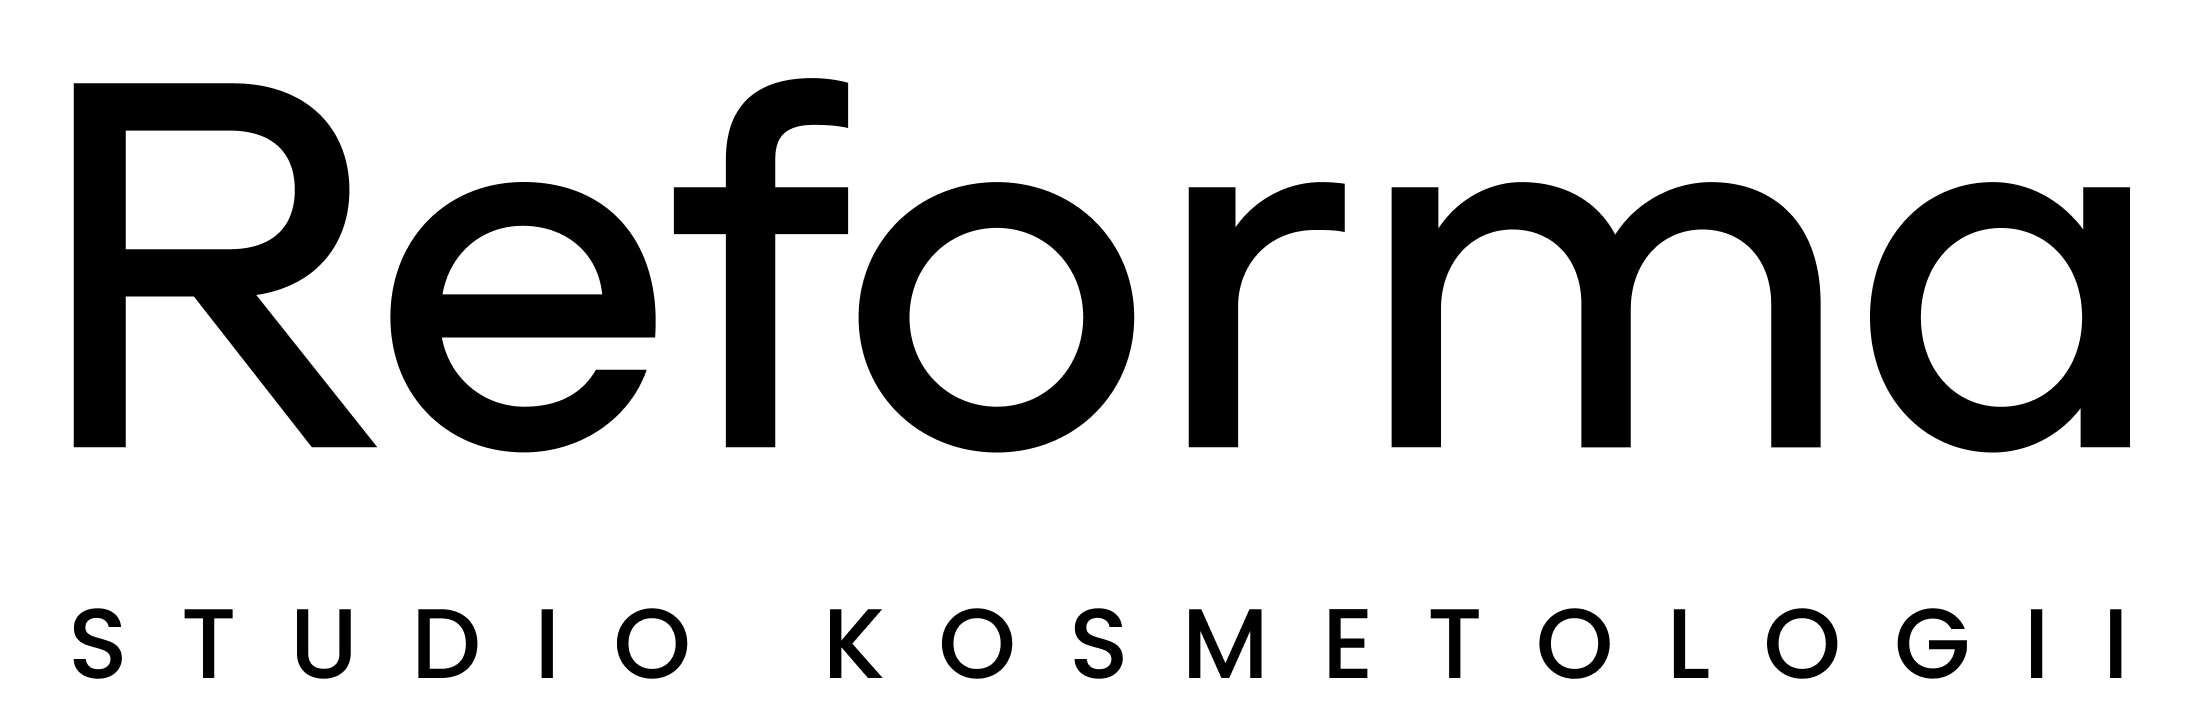 Oficjalne logo reforma studio w wersji czarnej